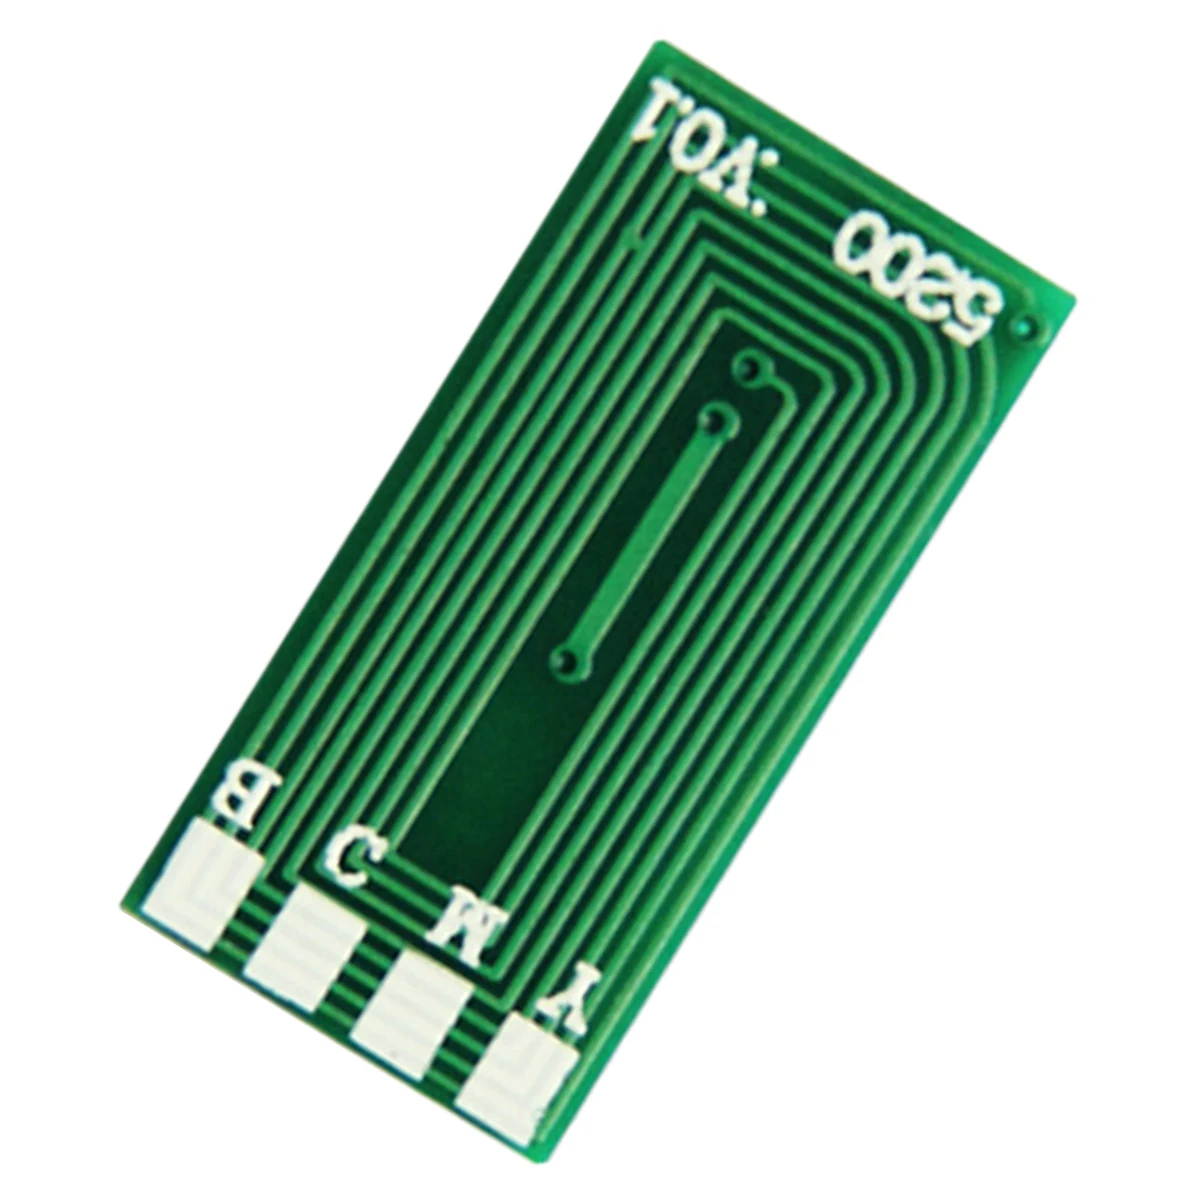 

Toner Chip for Ricoh Gestetner imagio IPSiO Aficio MPC-2050AD MPC-2530AD MPC-2550AD MPC-2010 MPC-2551 MPC-3301 MPC2801 AD SPF RC